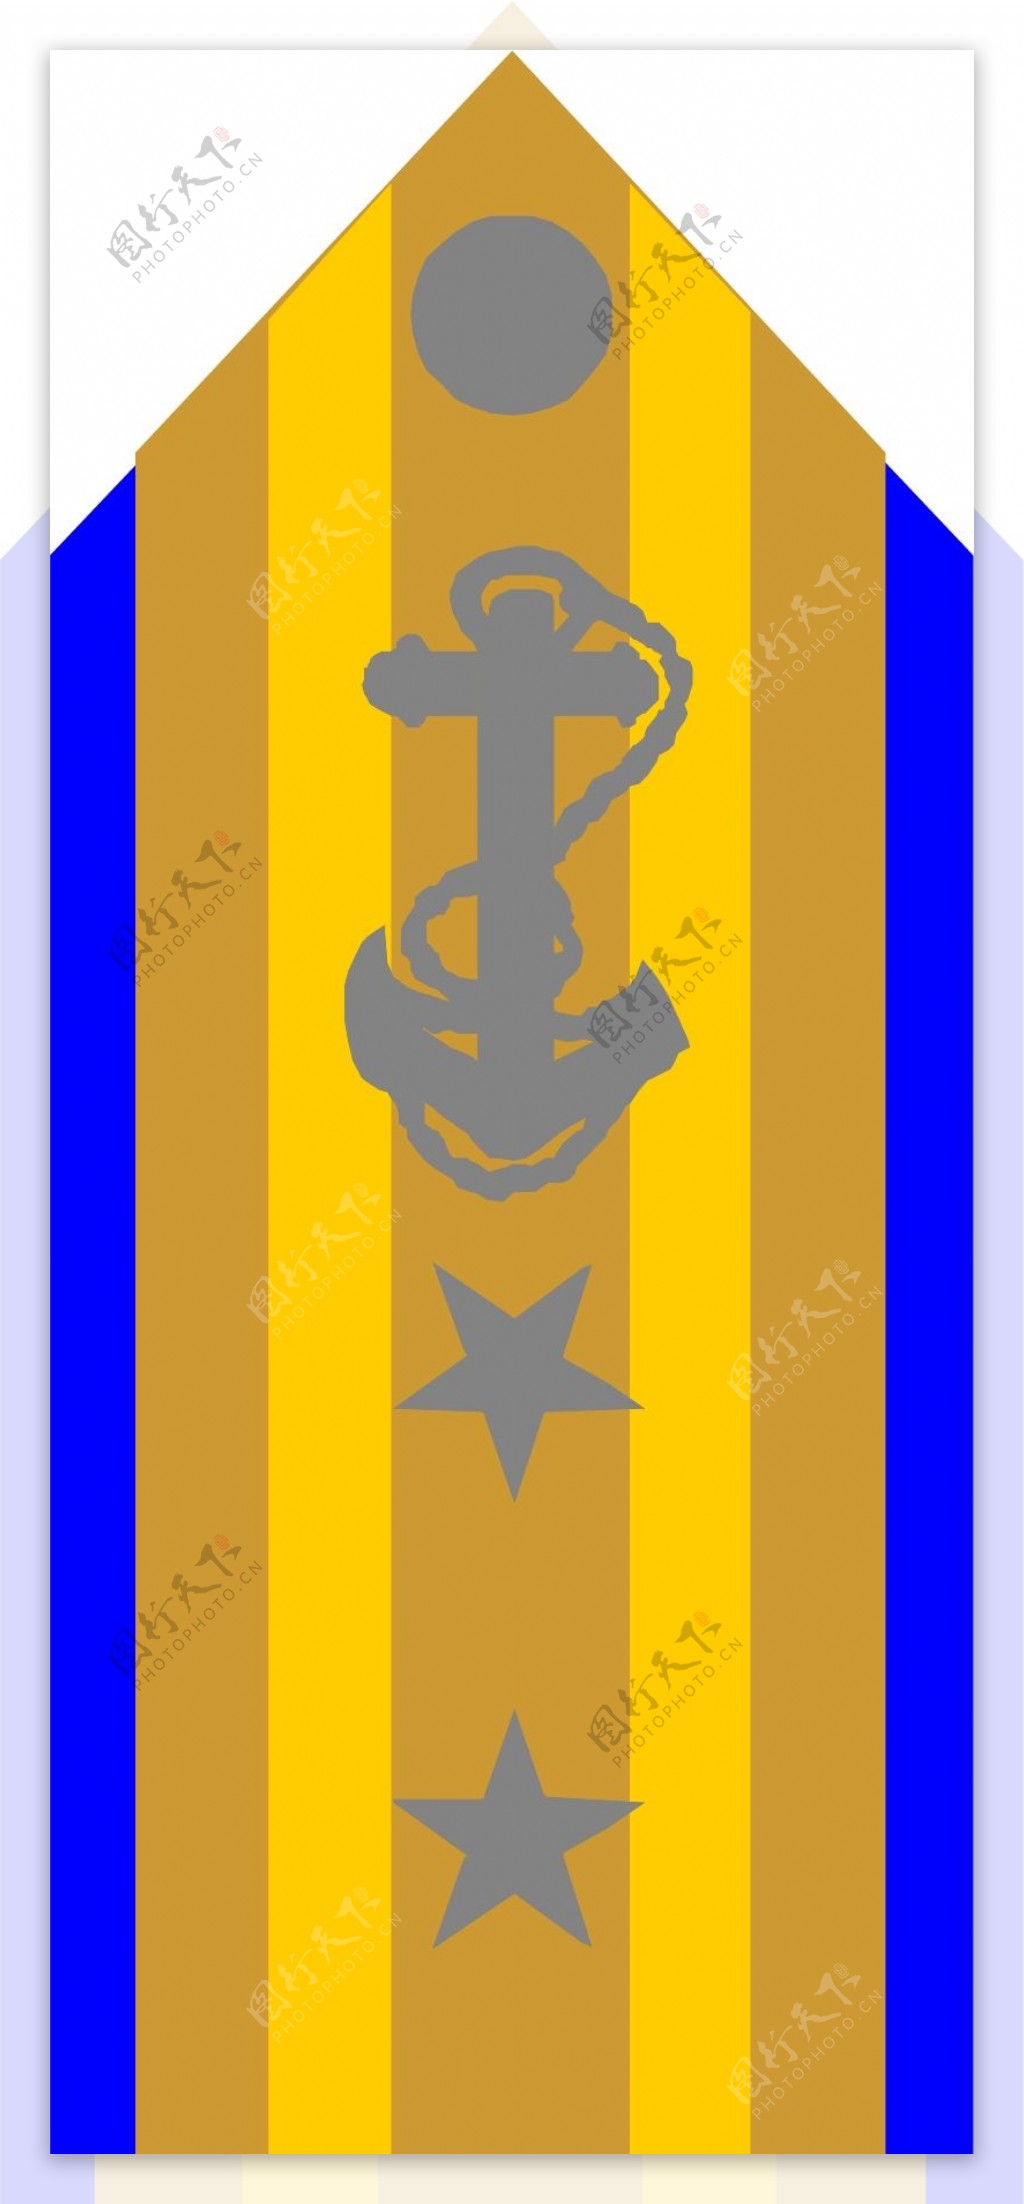 军队徽章0161